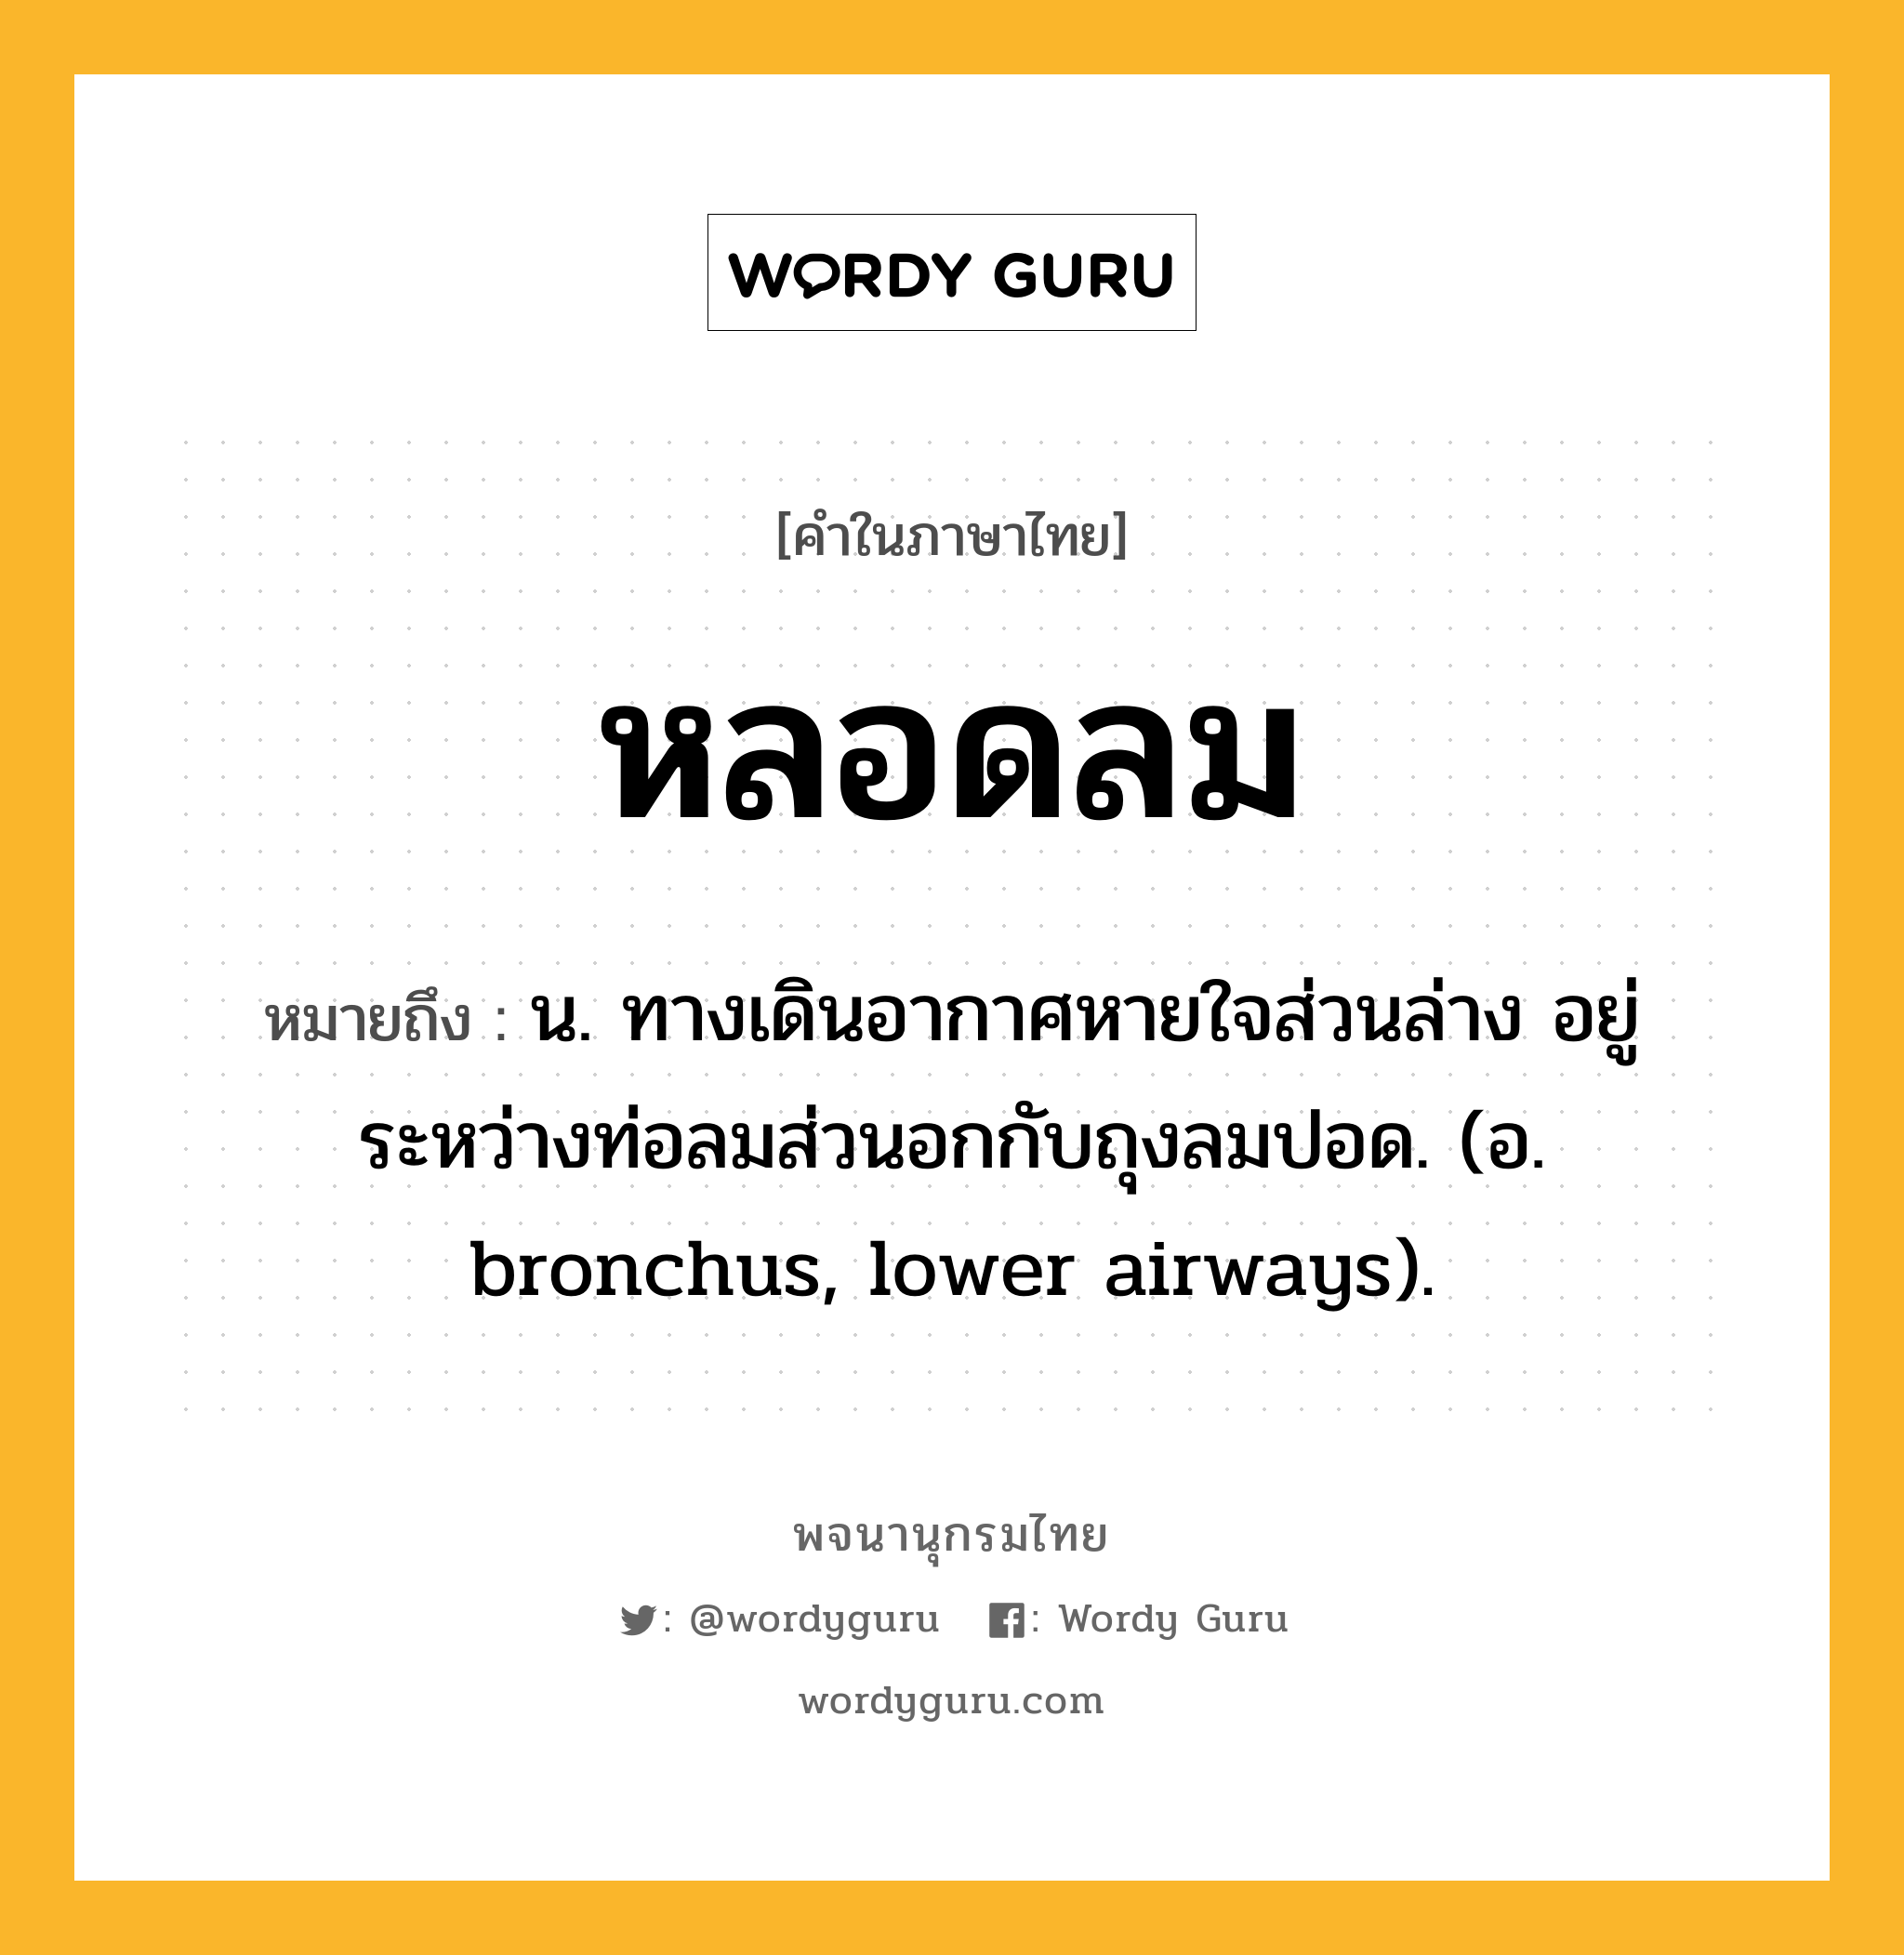 หลอดลม ความหมาย หมายถึงอะไร?, คำในภาษาไทย หลอดลม หมายถึง น. ทางเดินอากาศหายใจส่วนล่าง อยู่ระหว่างท่อลมส่วนอกกับถุงลมปอด. (อ. bronchus, lower airways).